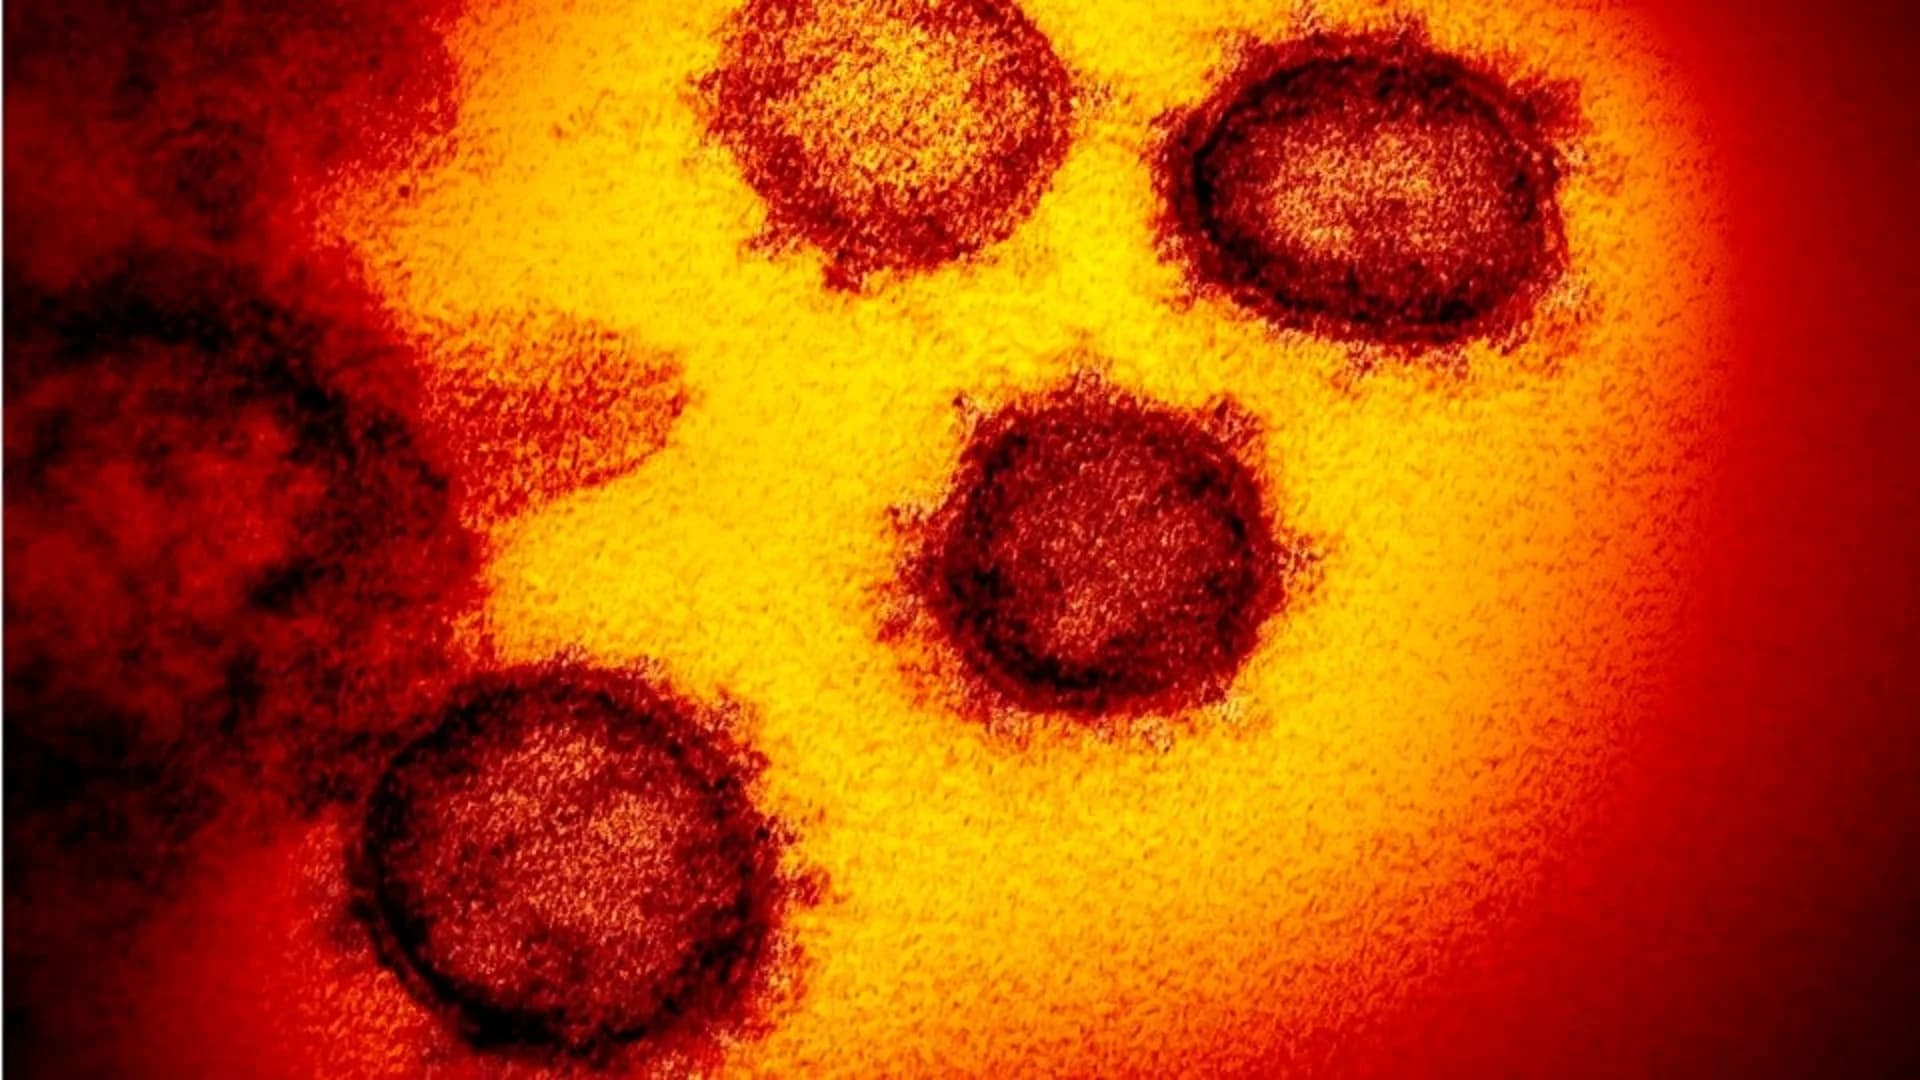 1st child in NYC dies from coronavirus